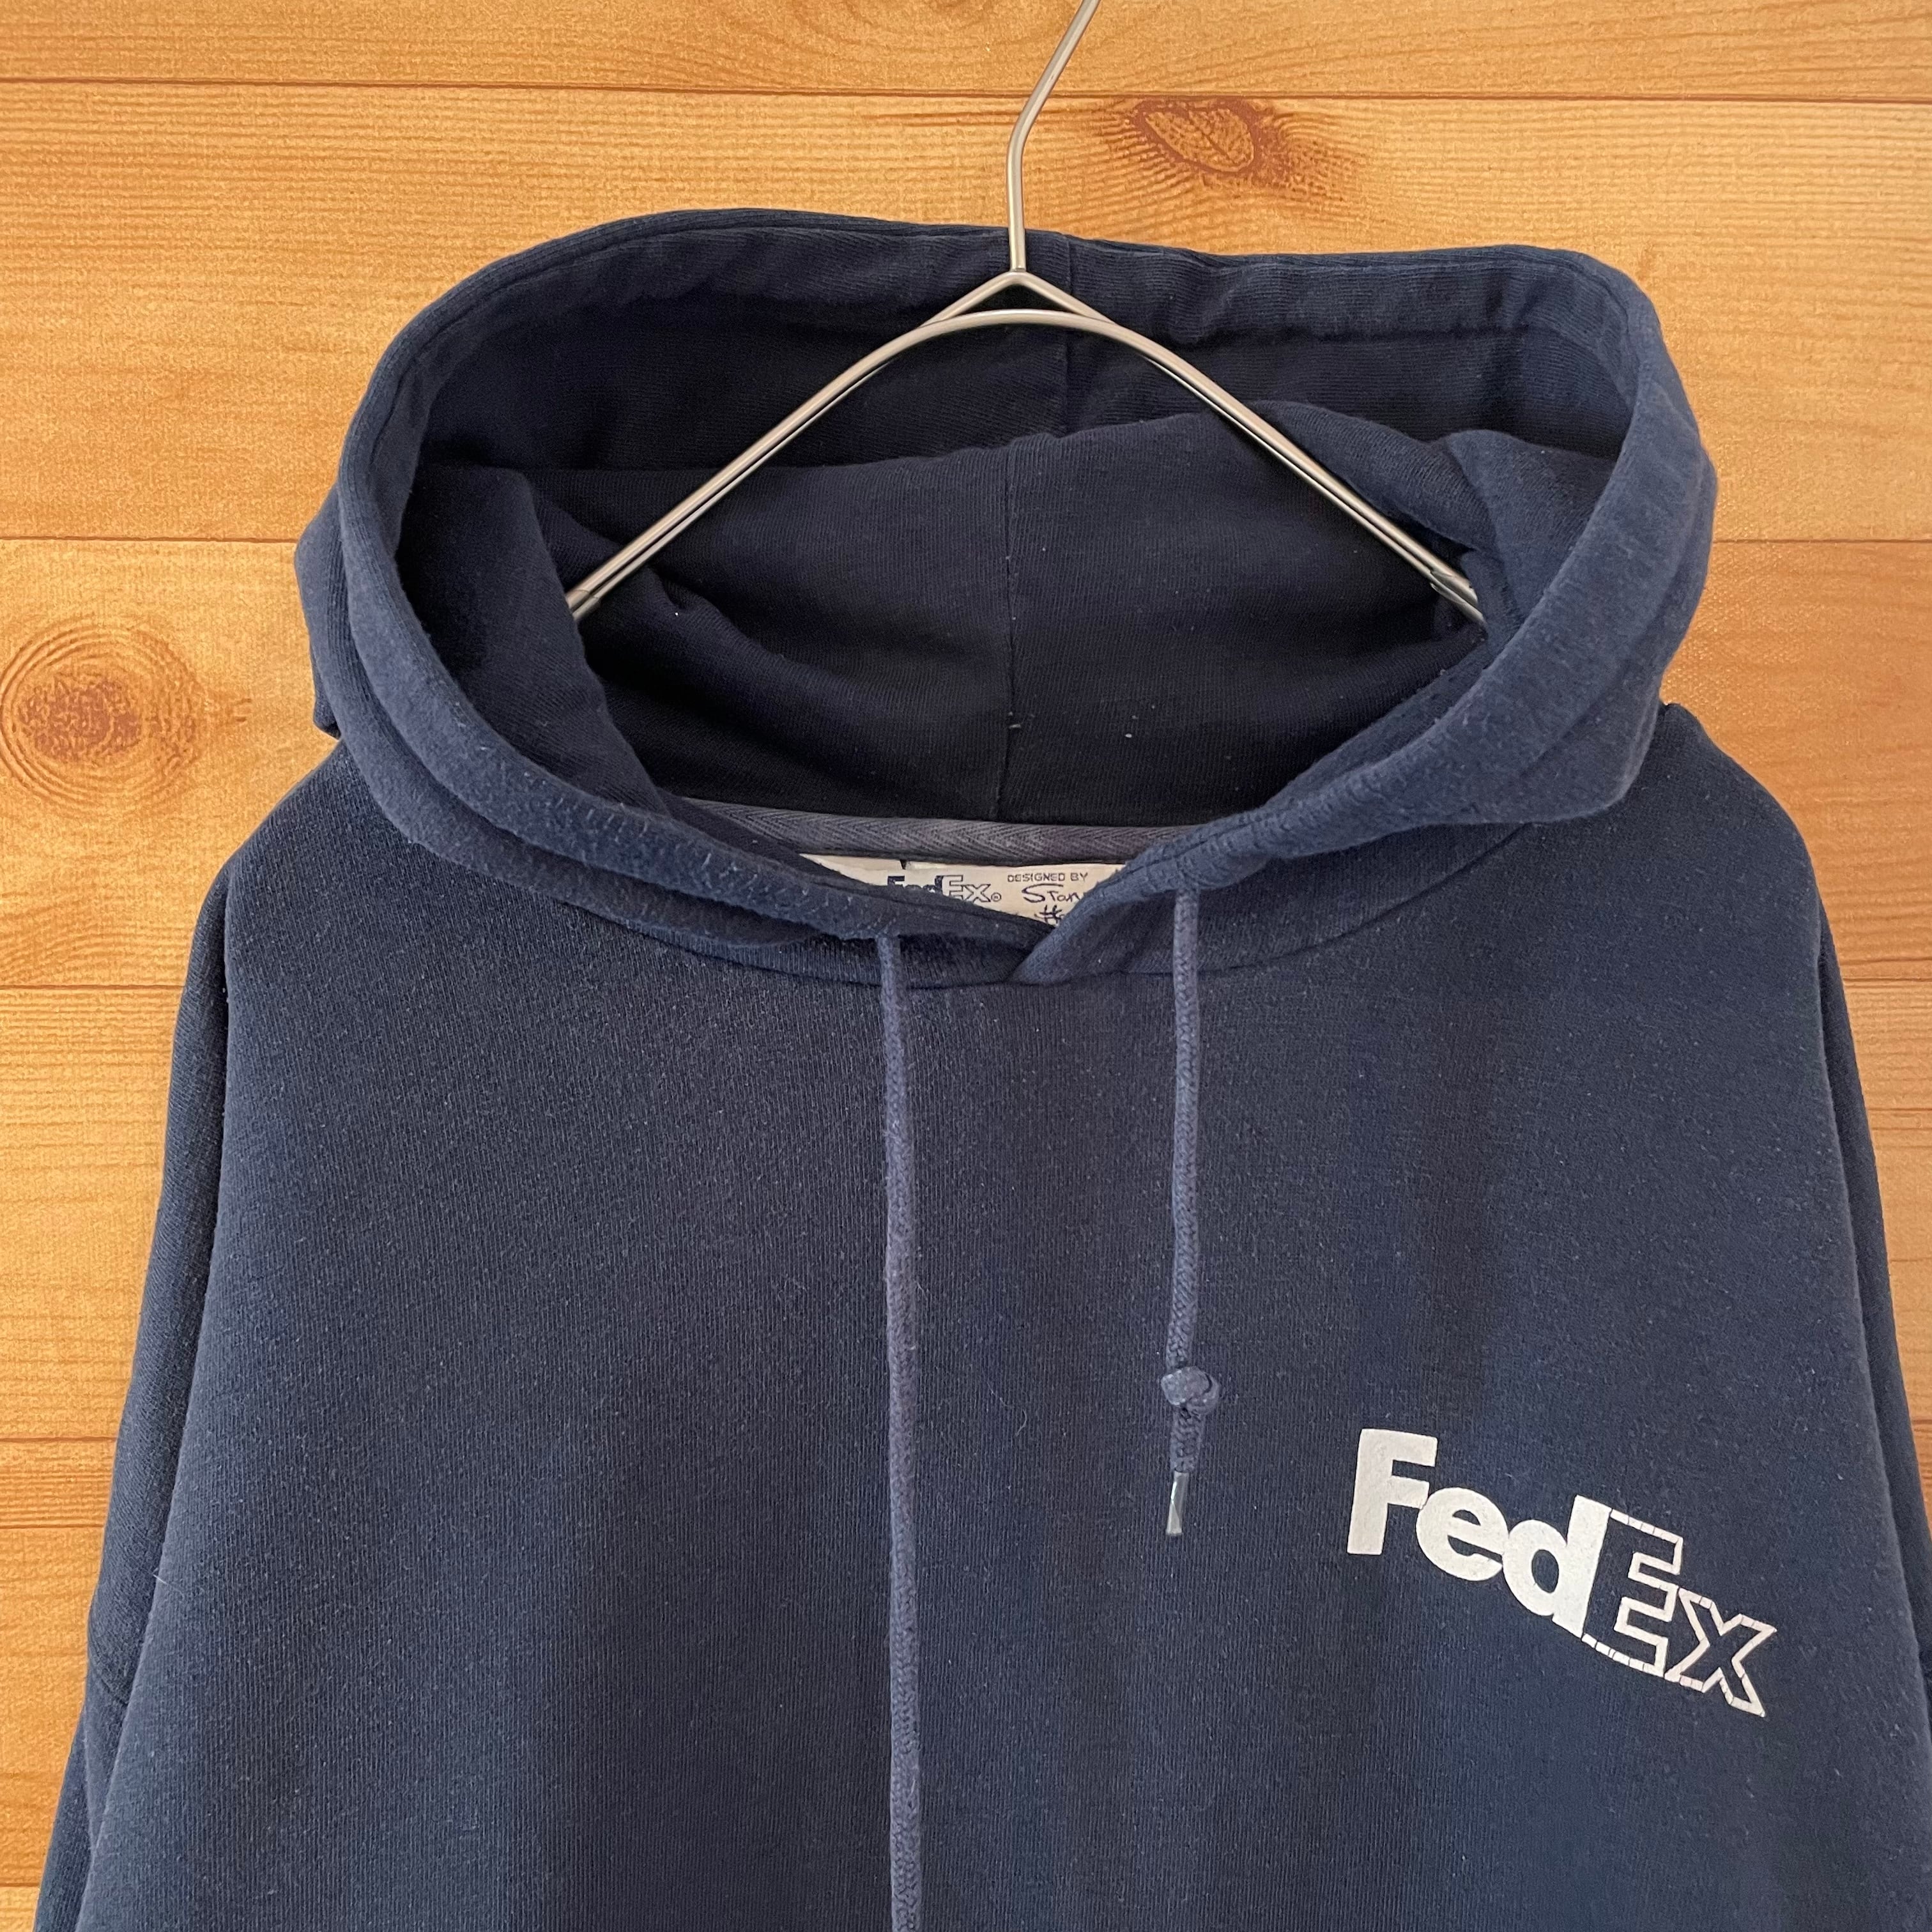 FedEx】企業系 企業ロゴ ワンポイントロゴ バックプリント パーカー